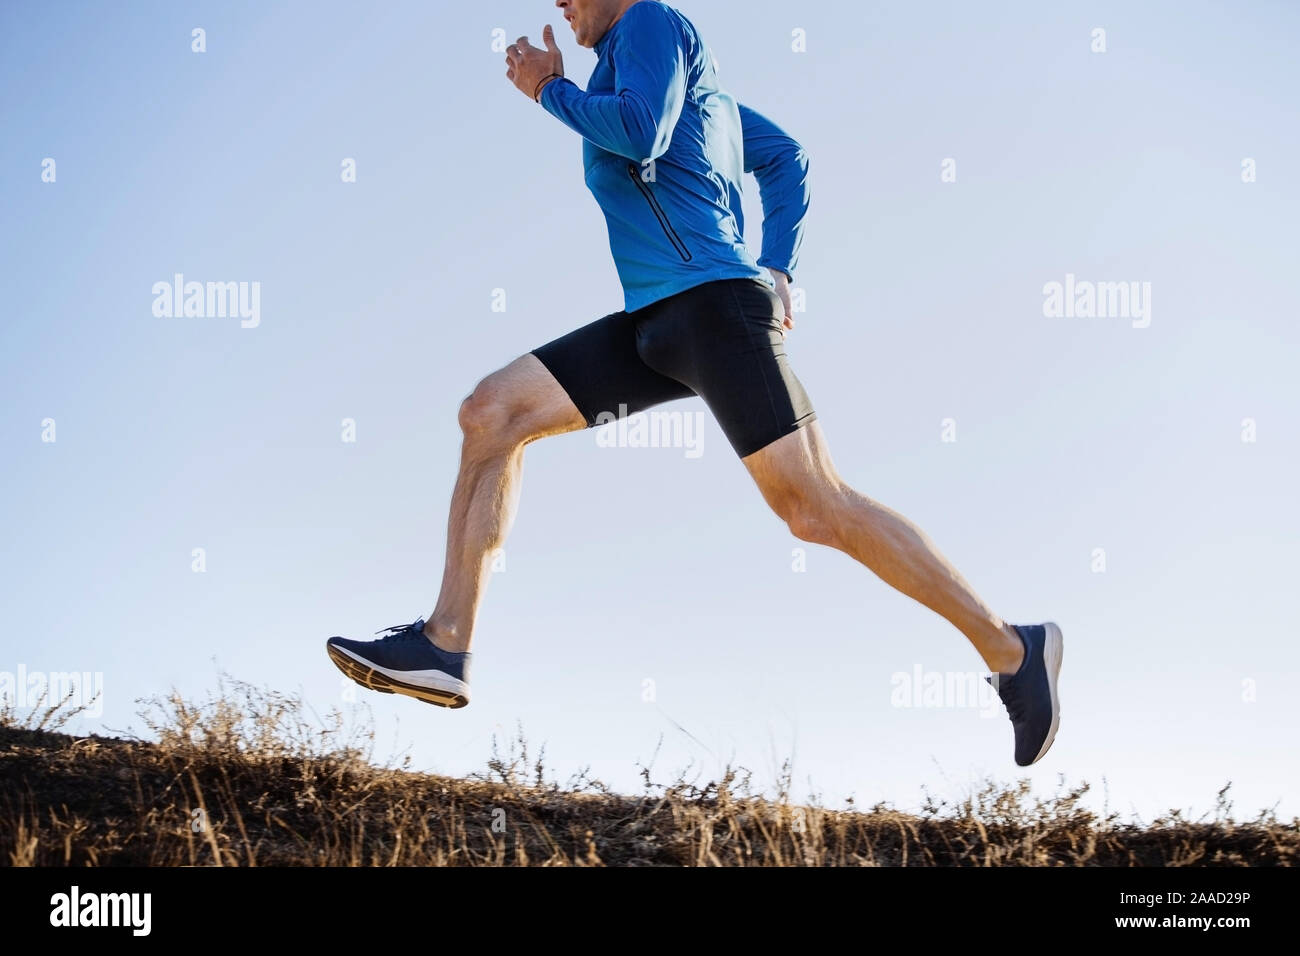 Männliche Läufer bergauf in der blauen Jacke und schwarzen engen Hose läuft Stockfoto